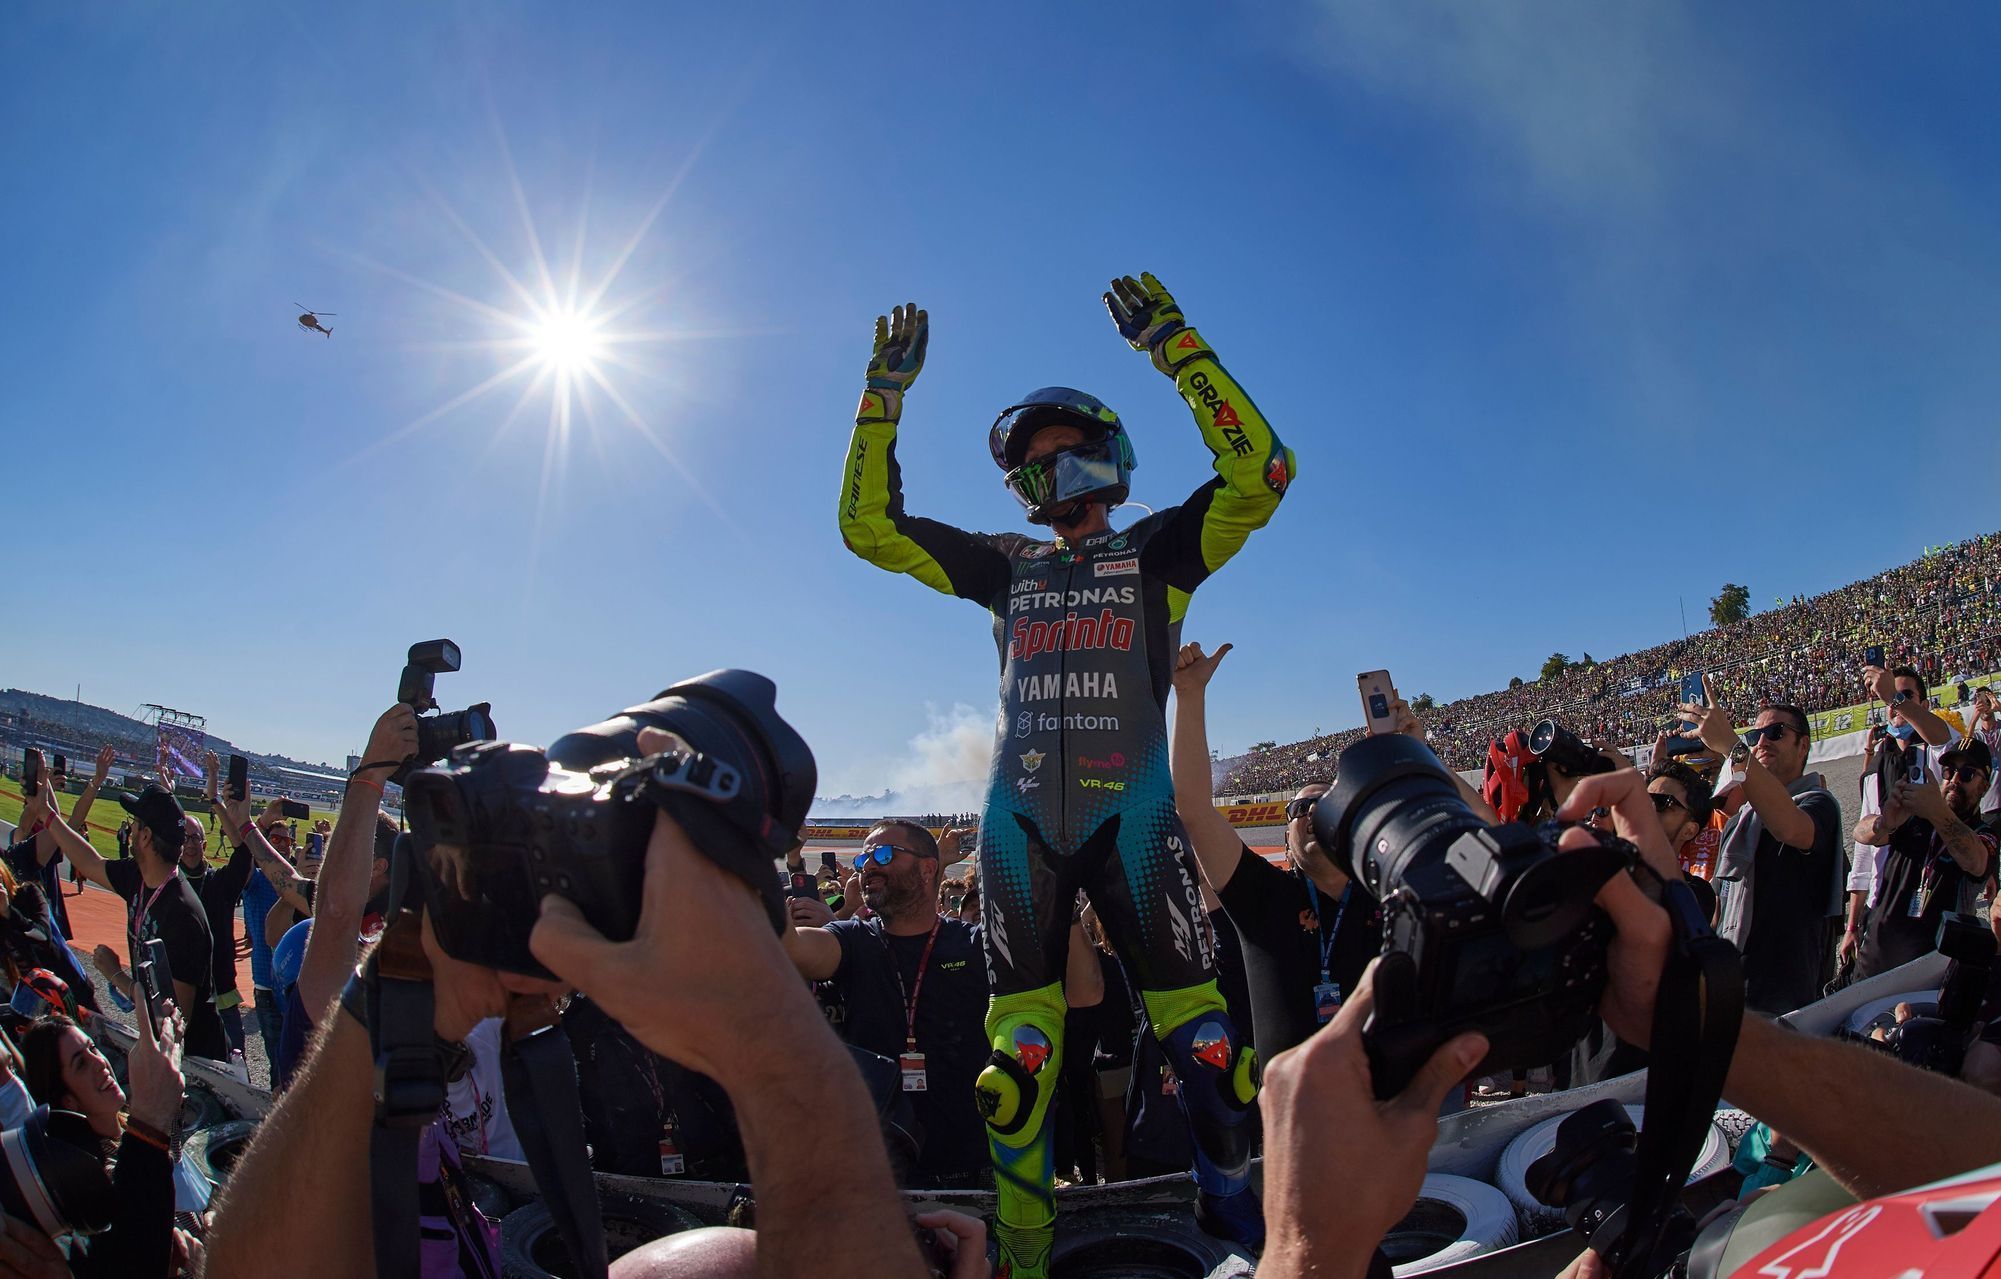 Valentino Rossi při posledním závodě kariéry v MotoGP ve Valencii 2021